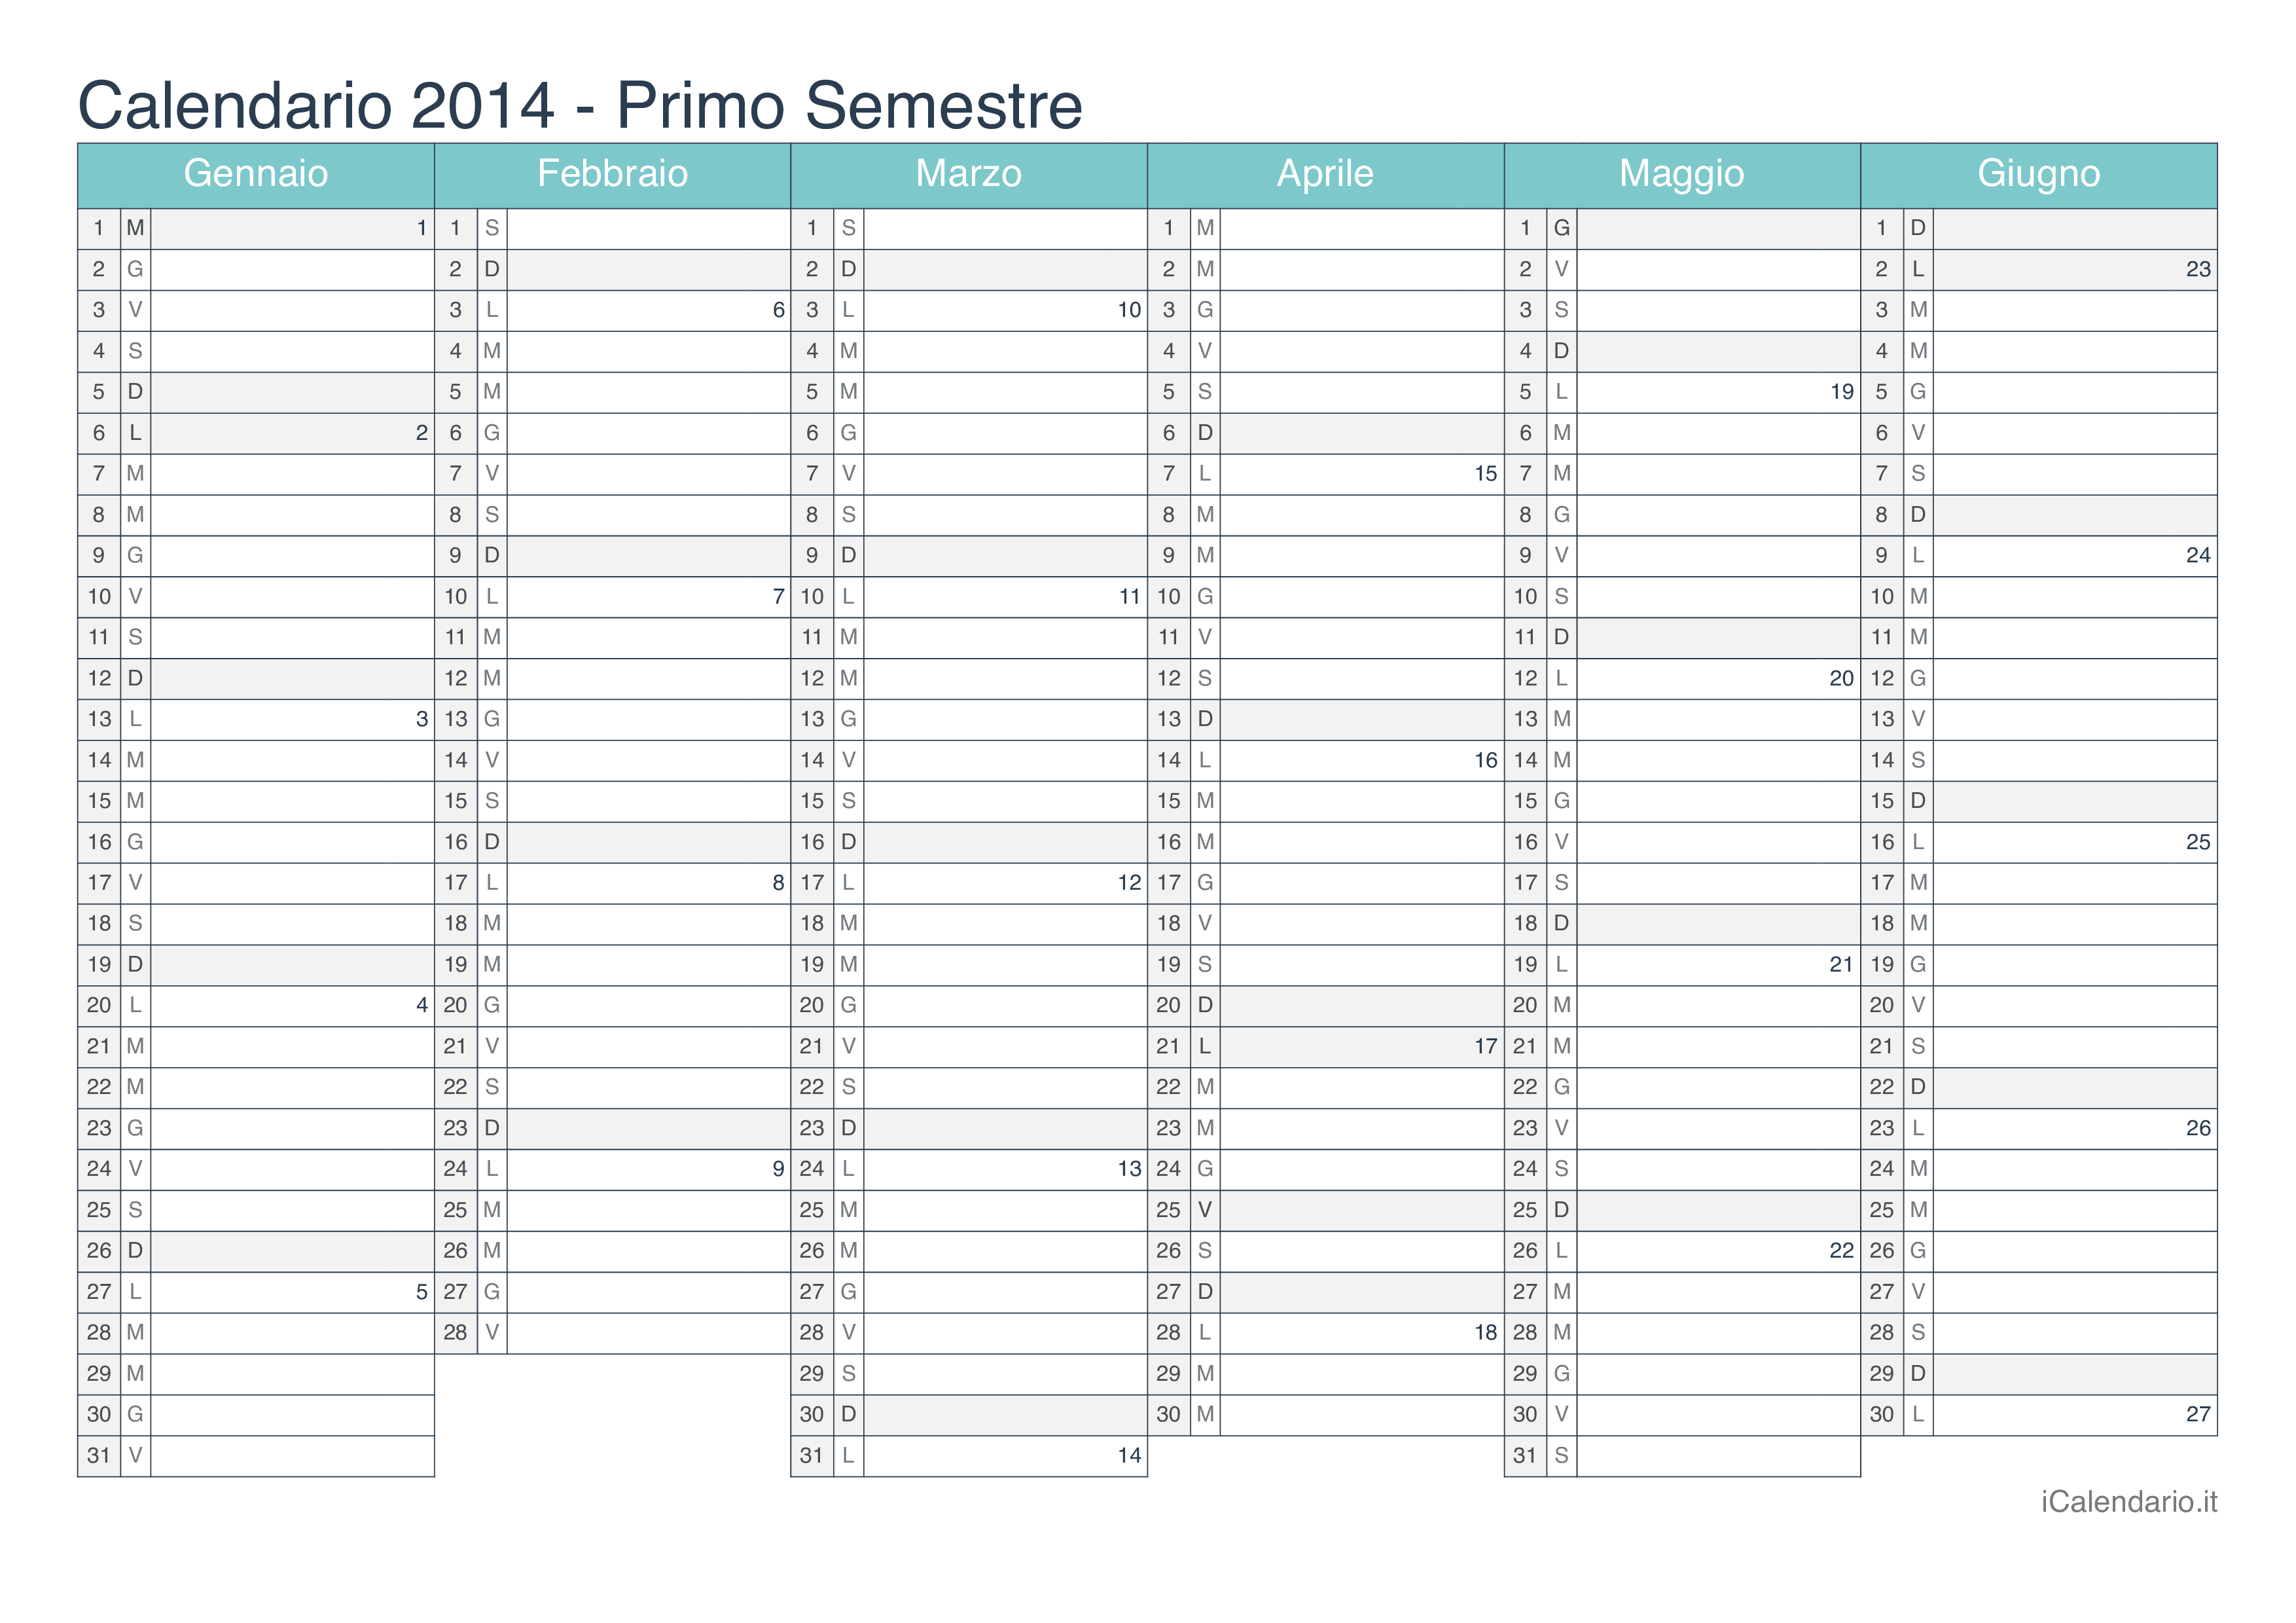 Calendario semestrale con numeri delle settimane 2014 - Turchese